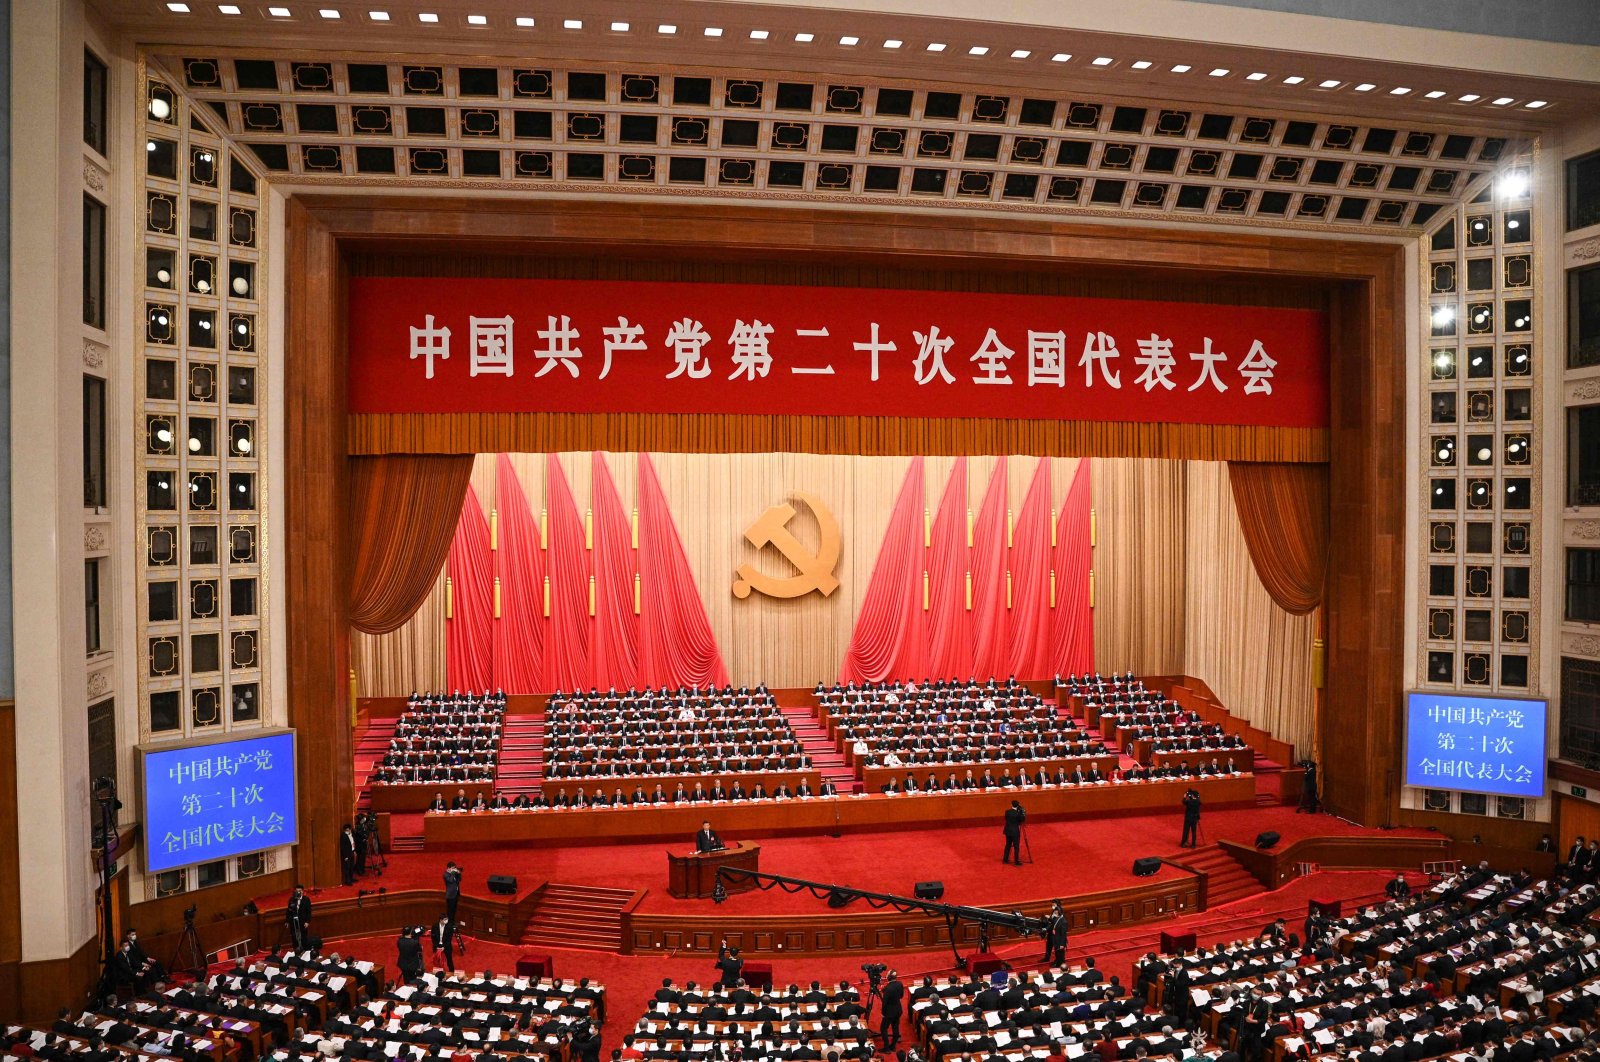 Partai Komunis Tiongkok berkumpul: Mengapa kita harus memperhatikan